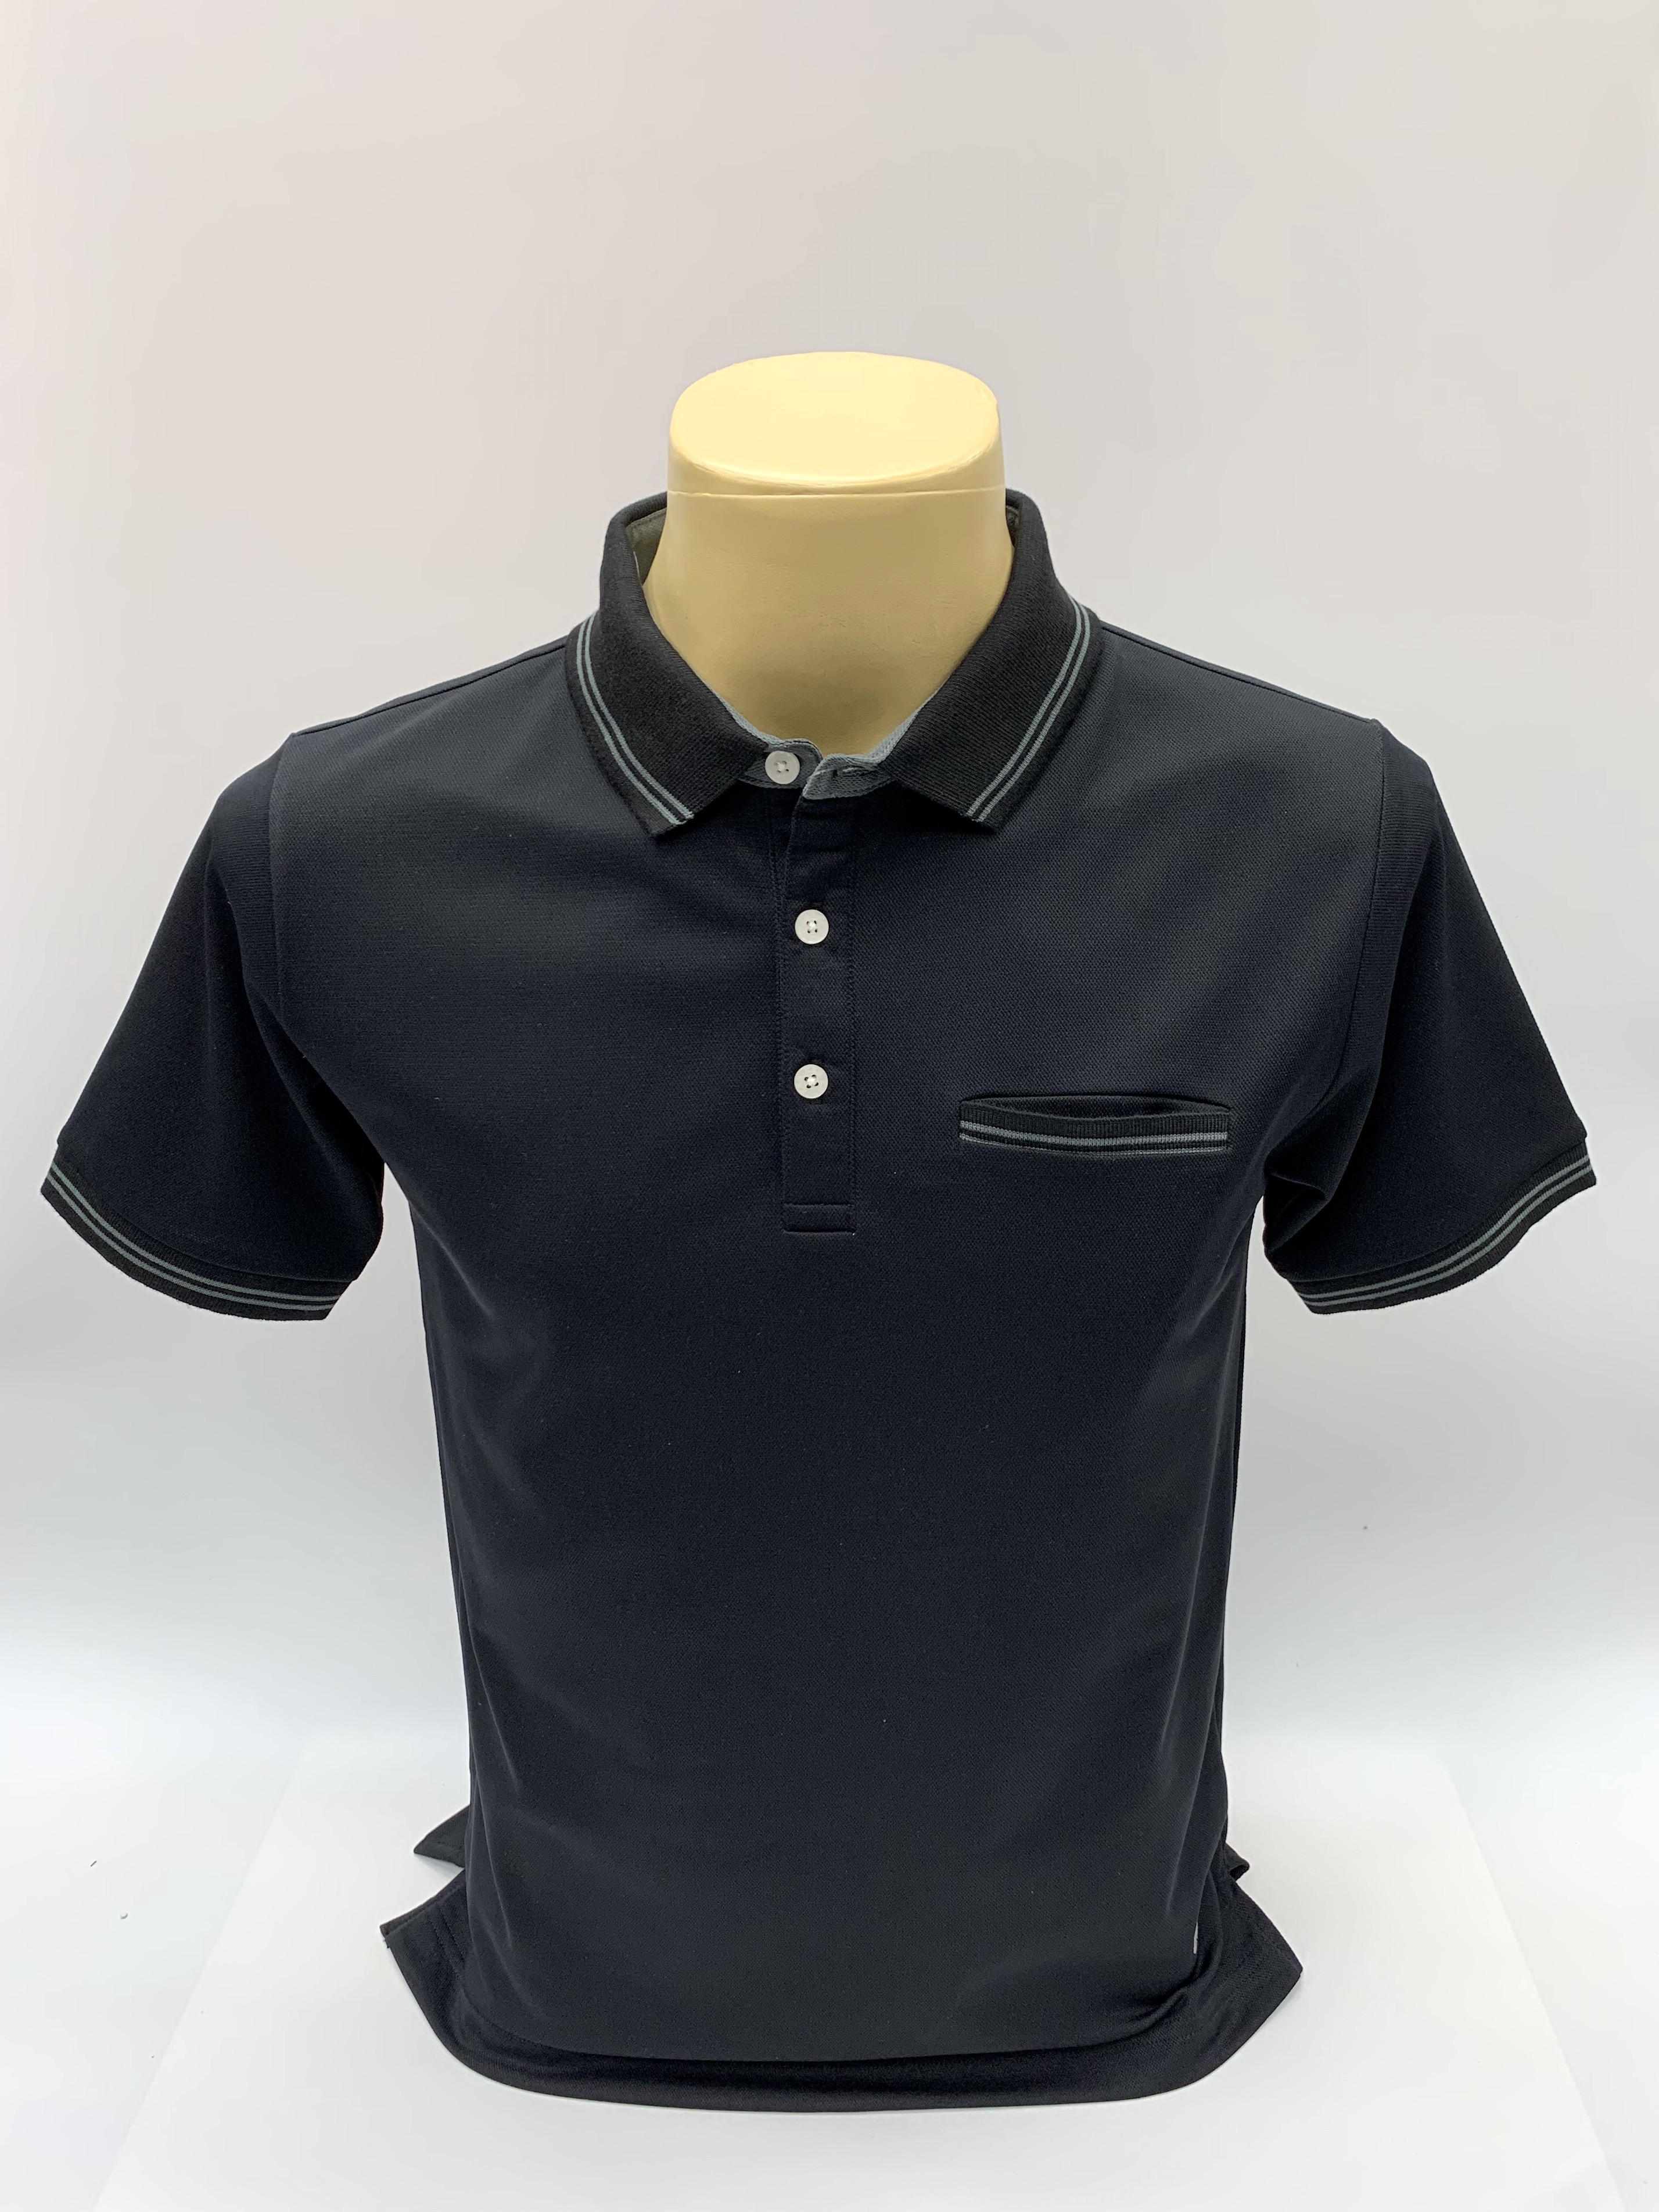 เสื้อคอโปโลแขนสั้น ผ้าดรายเทค (Dry Technology) มีกระเป๋าที่อกยี่ห้อ C59 AIR # 084 เสื้อคอปก เสื้อผู้ชาย เสื้อมีปก เสื้อสีพื้น เสื้อโปโล Kingberry Shop